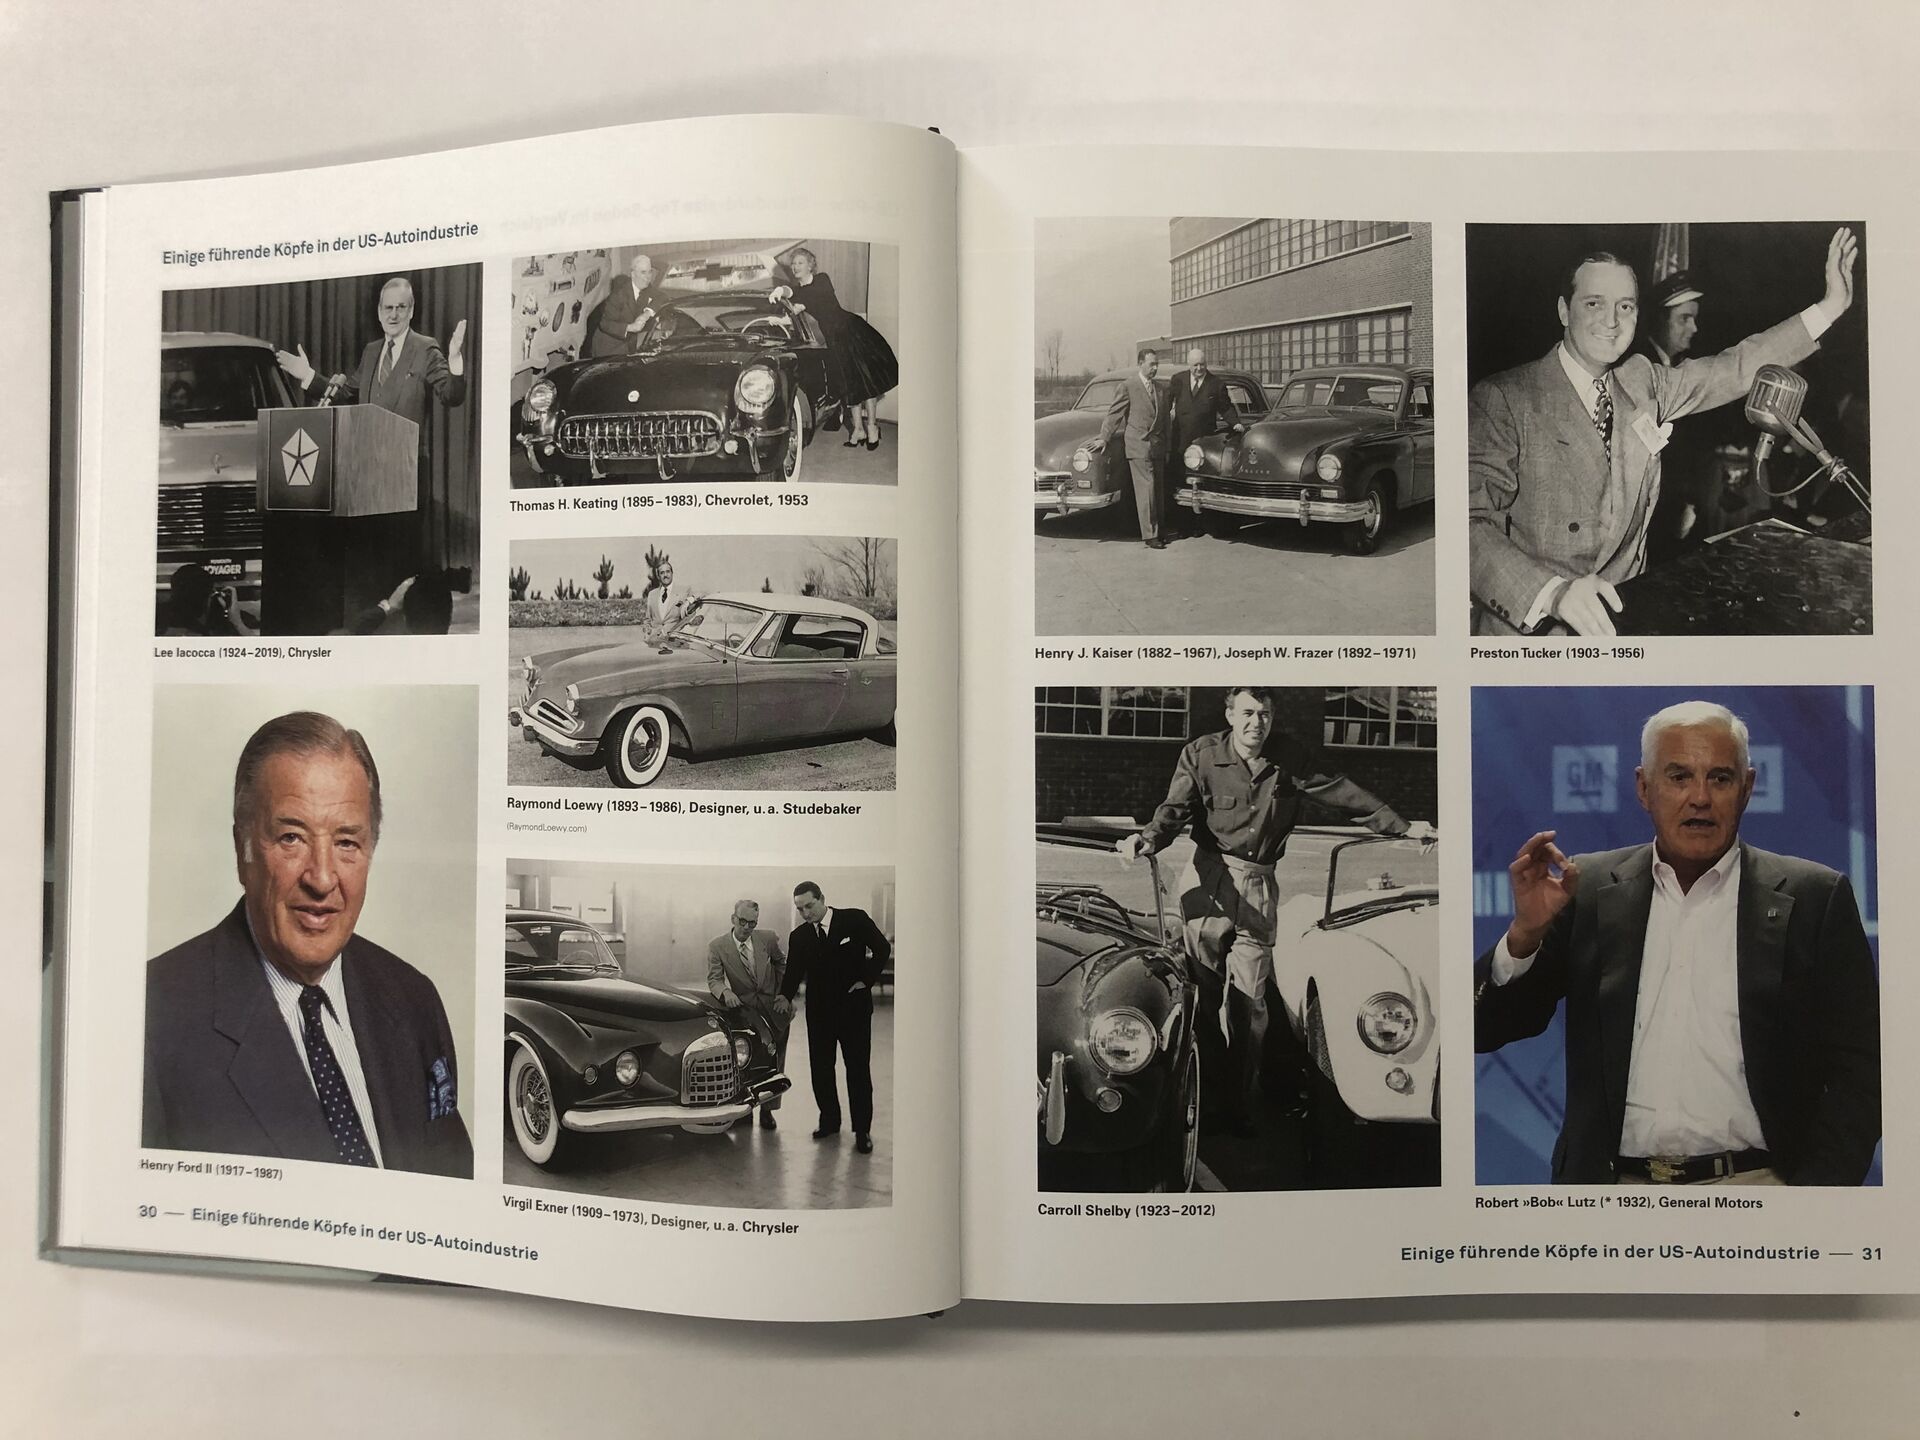 Alle Autos der 50er Jahre' von 'Roger Gloor' - Buch - '978-3-613-04430-2